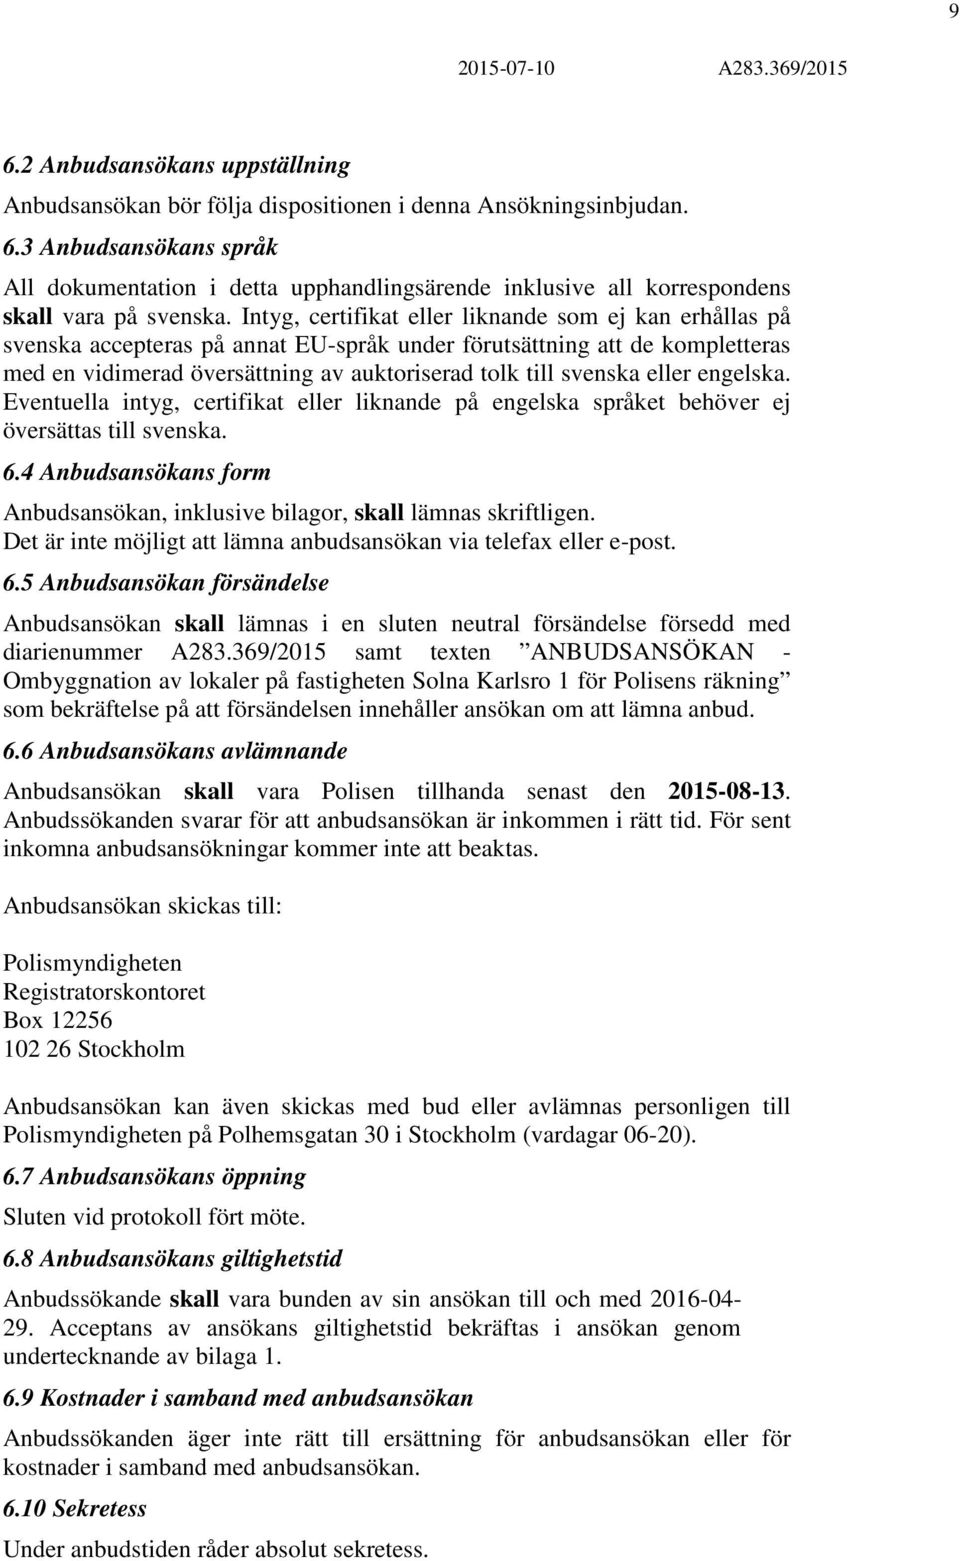 eller engelska. Eventuella intyg, certifikat eller liknande på engelska språket behöver ej översättas till svenska. 6.4 Anbudsansökans form Anbudsansökan, inklusive bilagor, skall lämnas skriftligen.